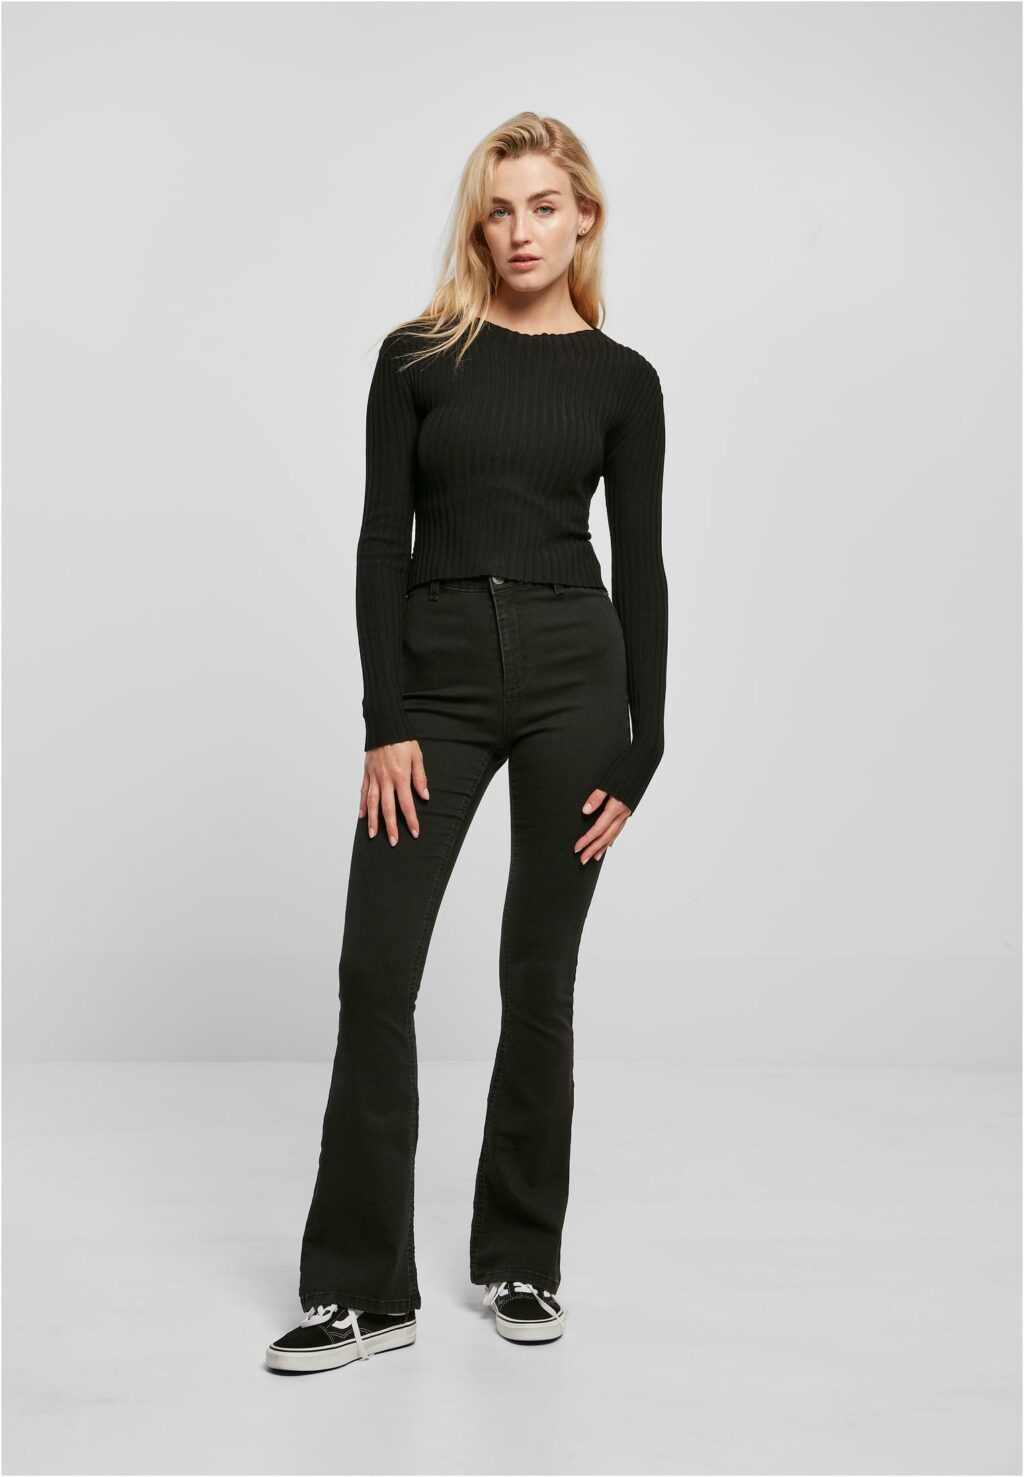 Urban Classics Ladies Short Rib Knit Twisted Back Sweater black TB5442